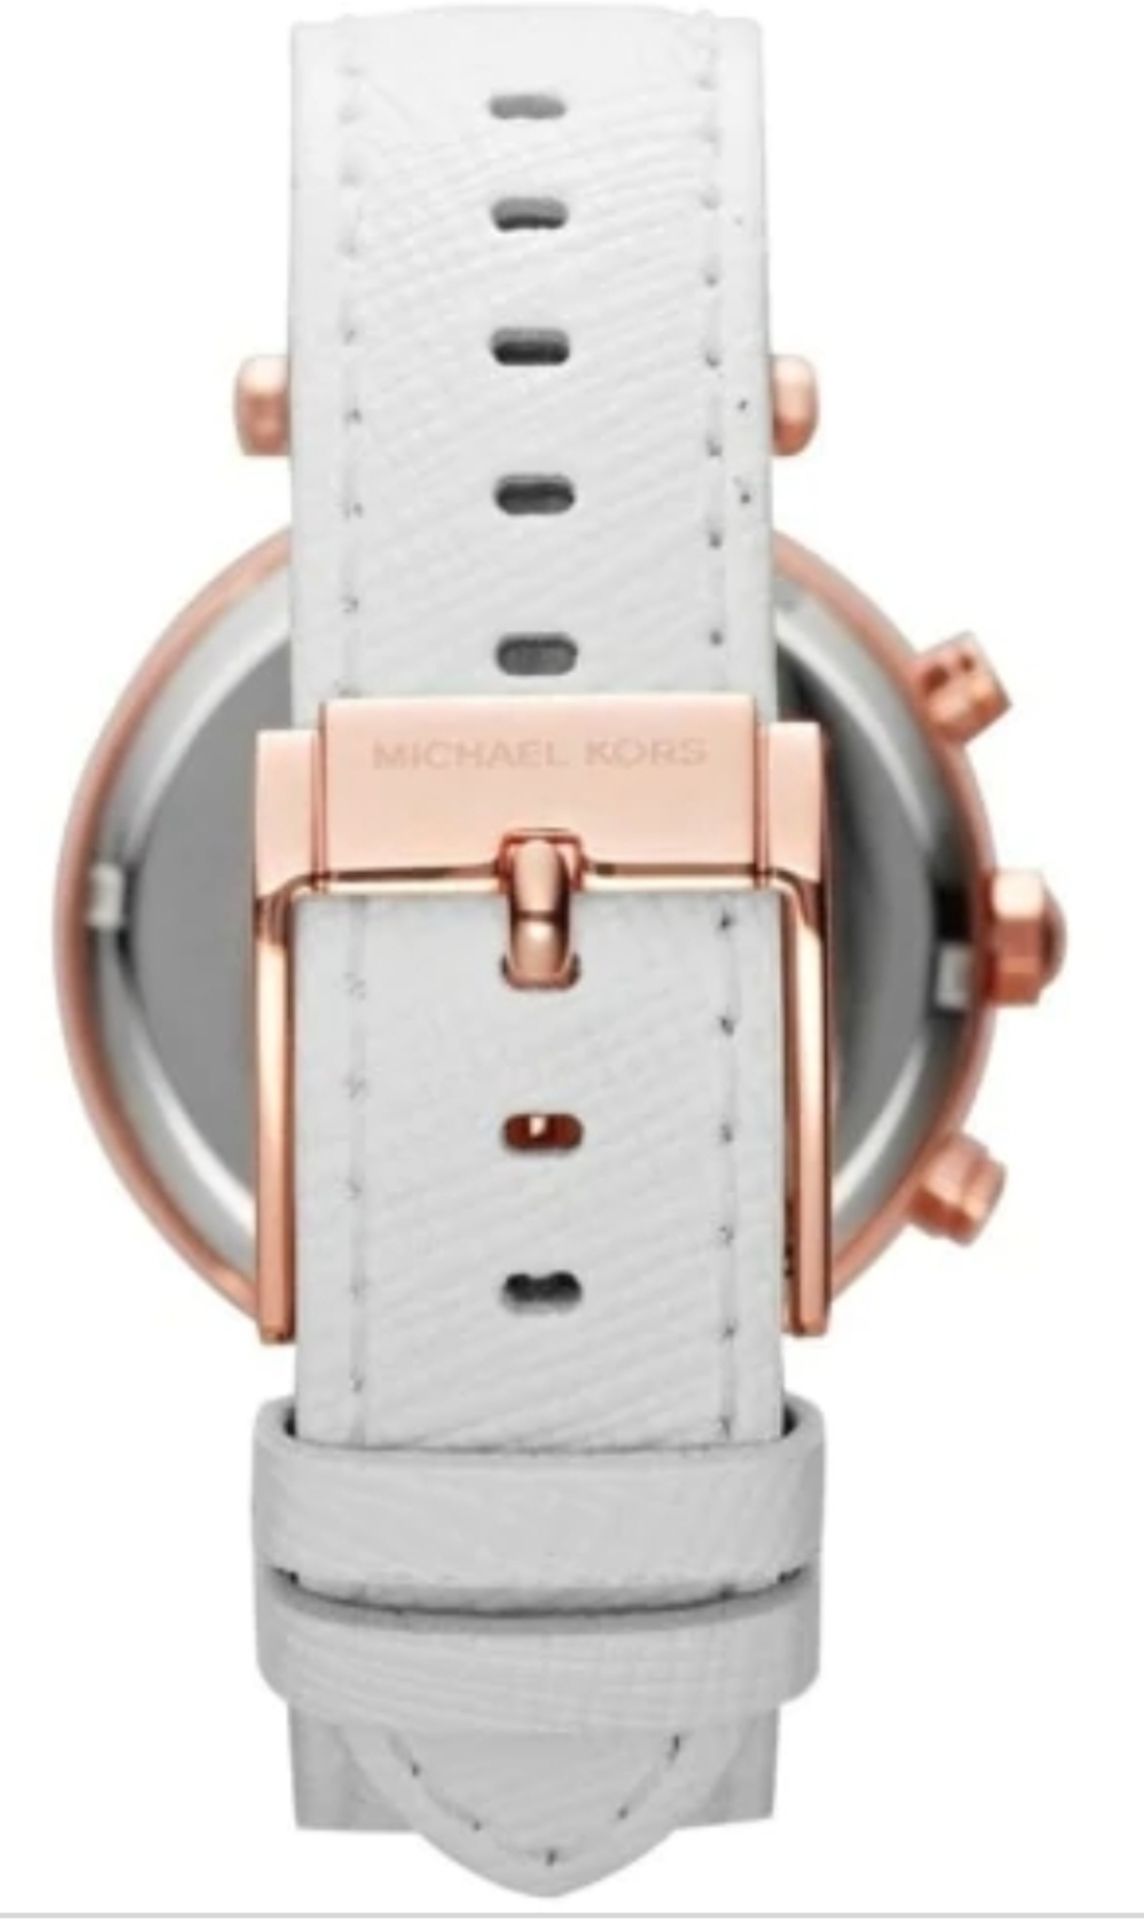 Michael Kors MK2281 Ladies Parker Chronograph Quartz Watch - Image 8 of 10